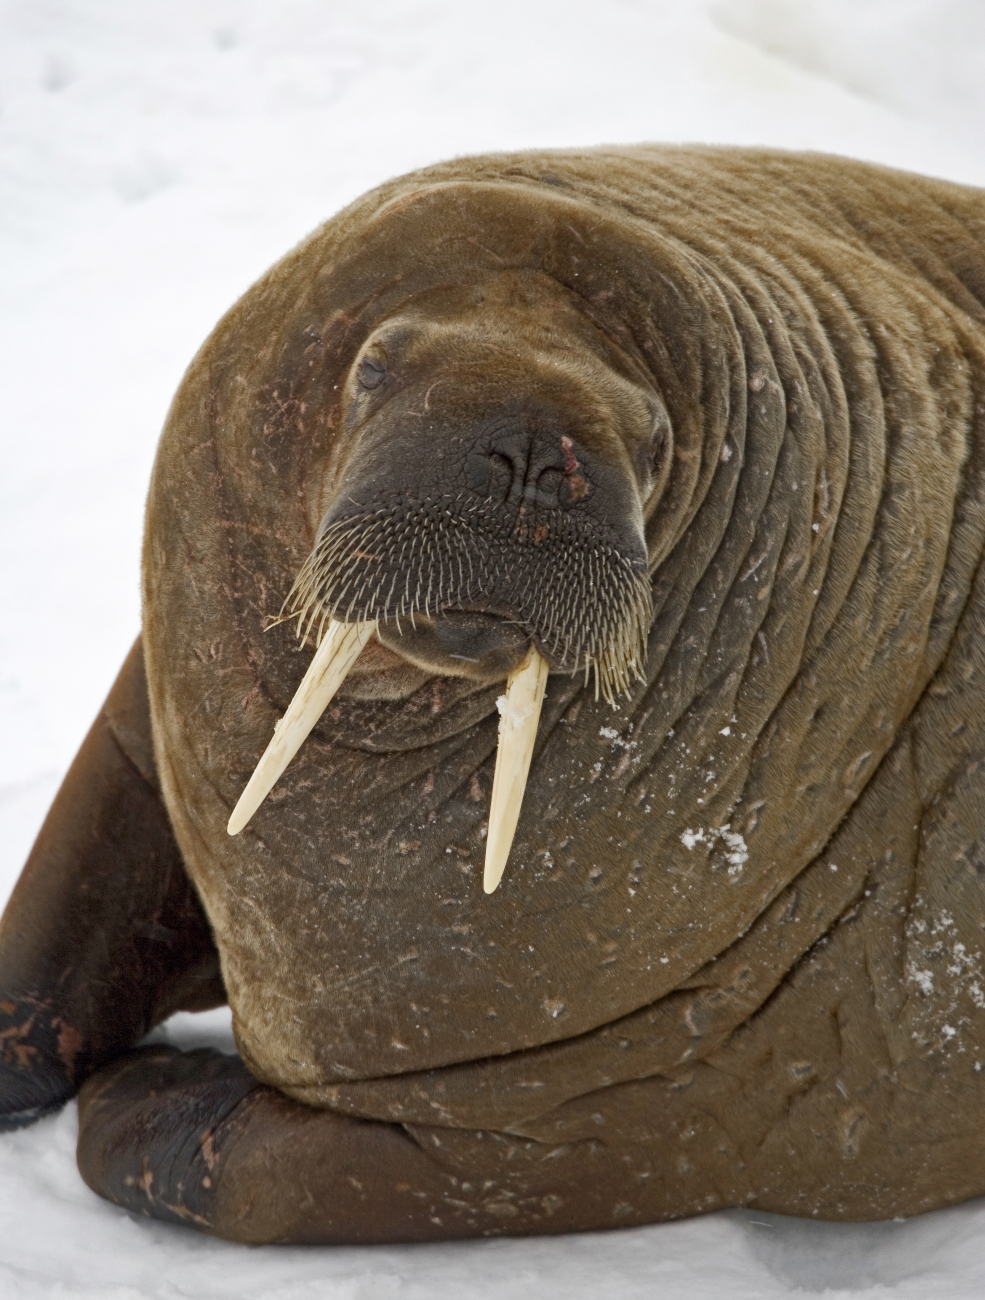 Walrus (Odobenus rosmarus rosmarus) hauled out on the ice